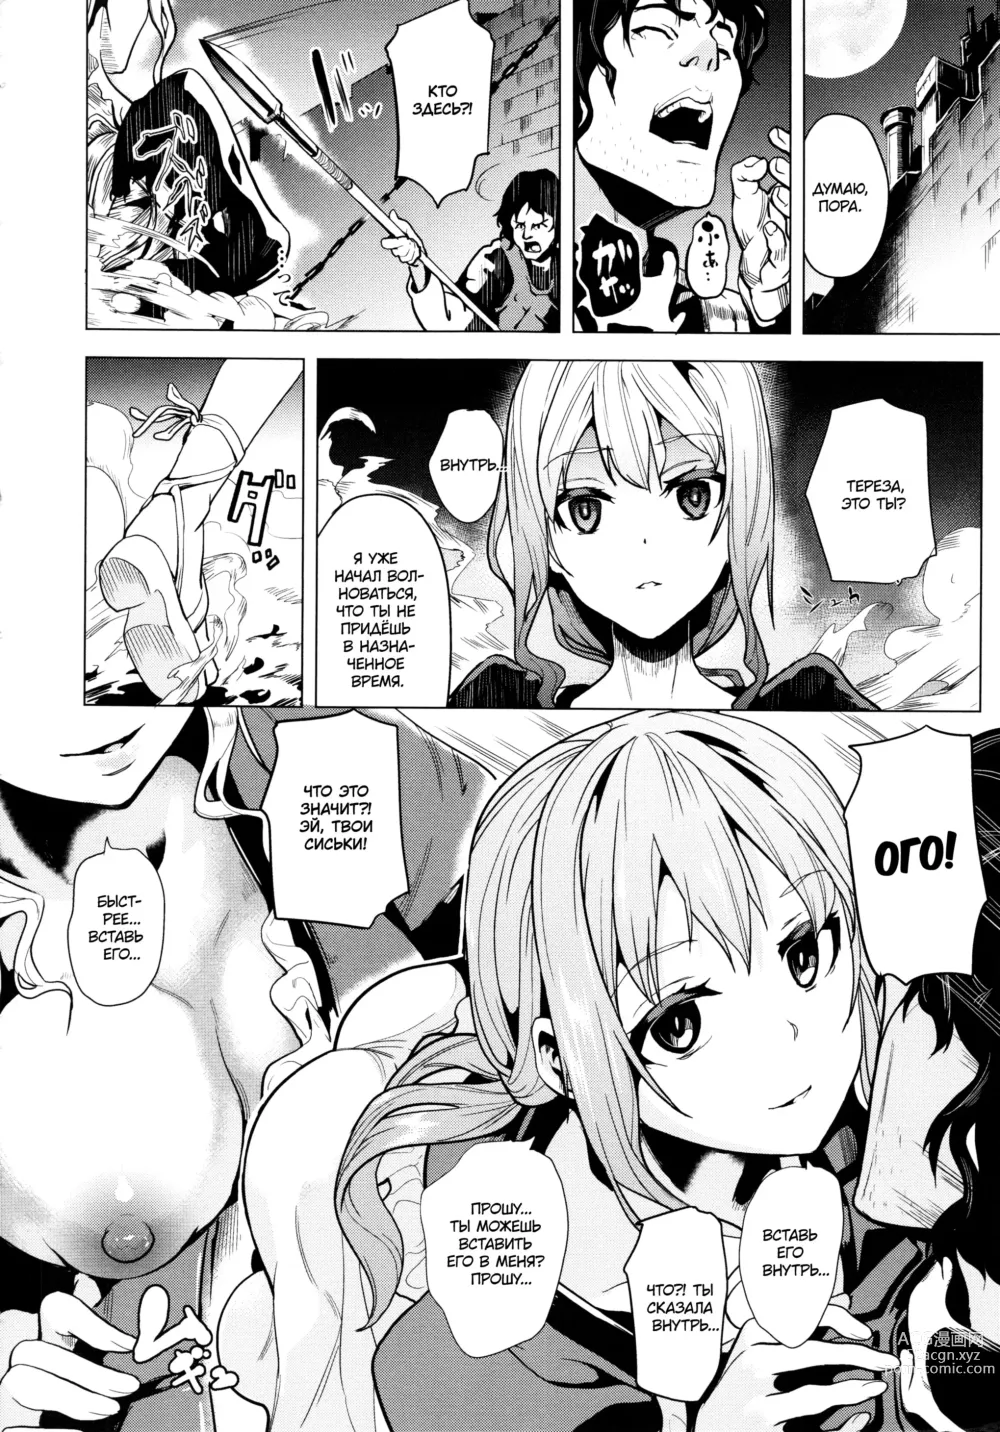 Page 2 of manga OGRE #1